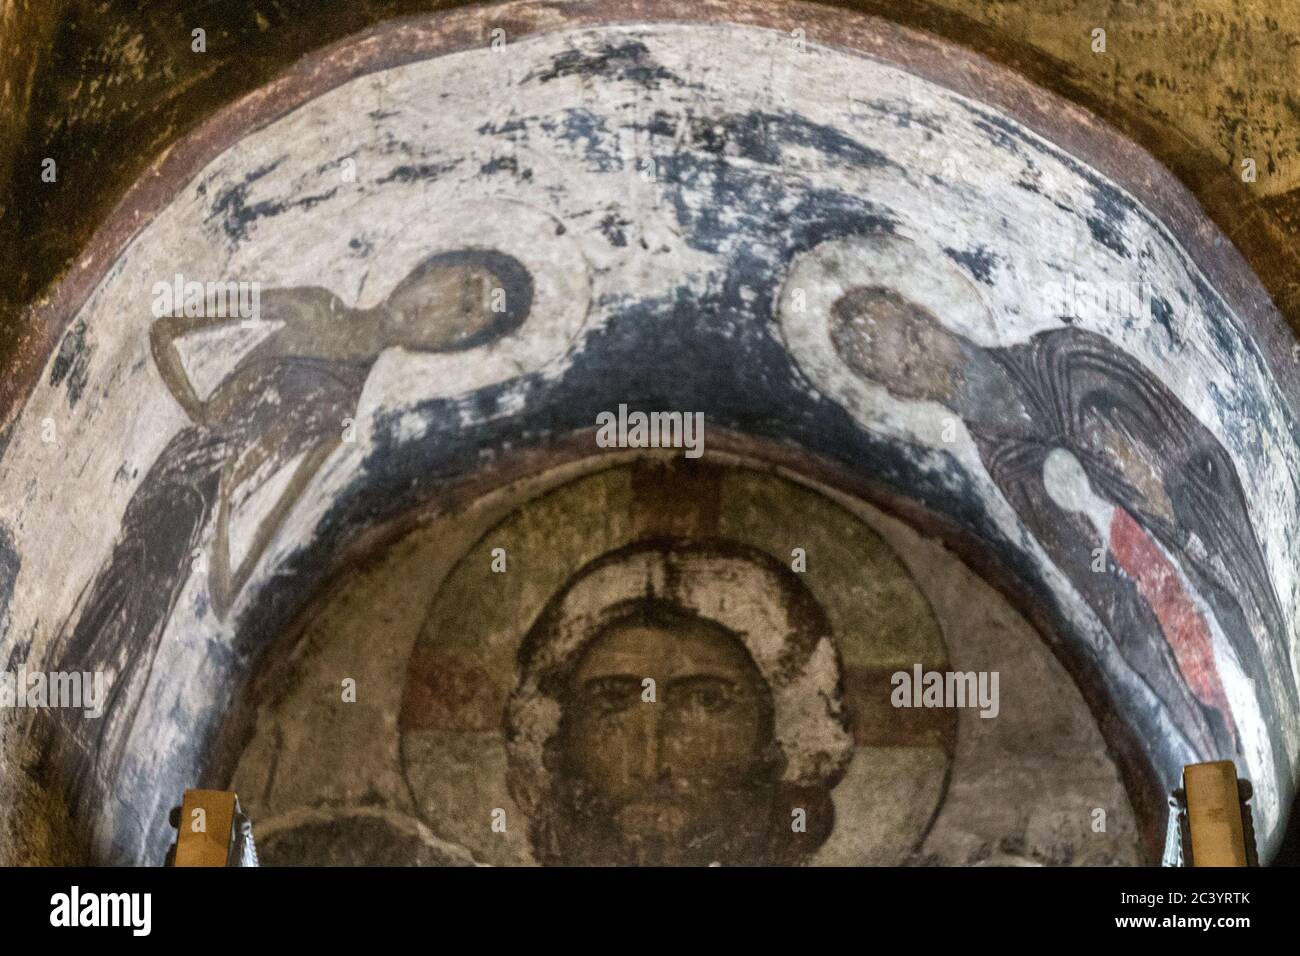 Image de Jésus au-dessus de l'entrée de l'intérieur de l'église, église de l'Assomption ville découpée en roche et monestary de Vardzia (grottes), Géorgie du Sud, Tromané Banque D'Images